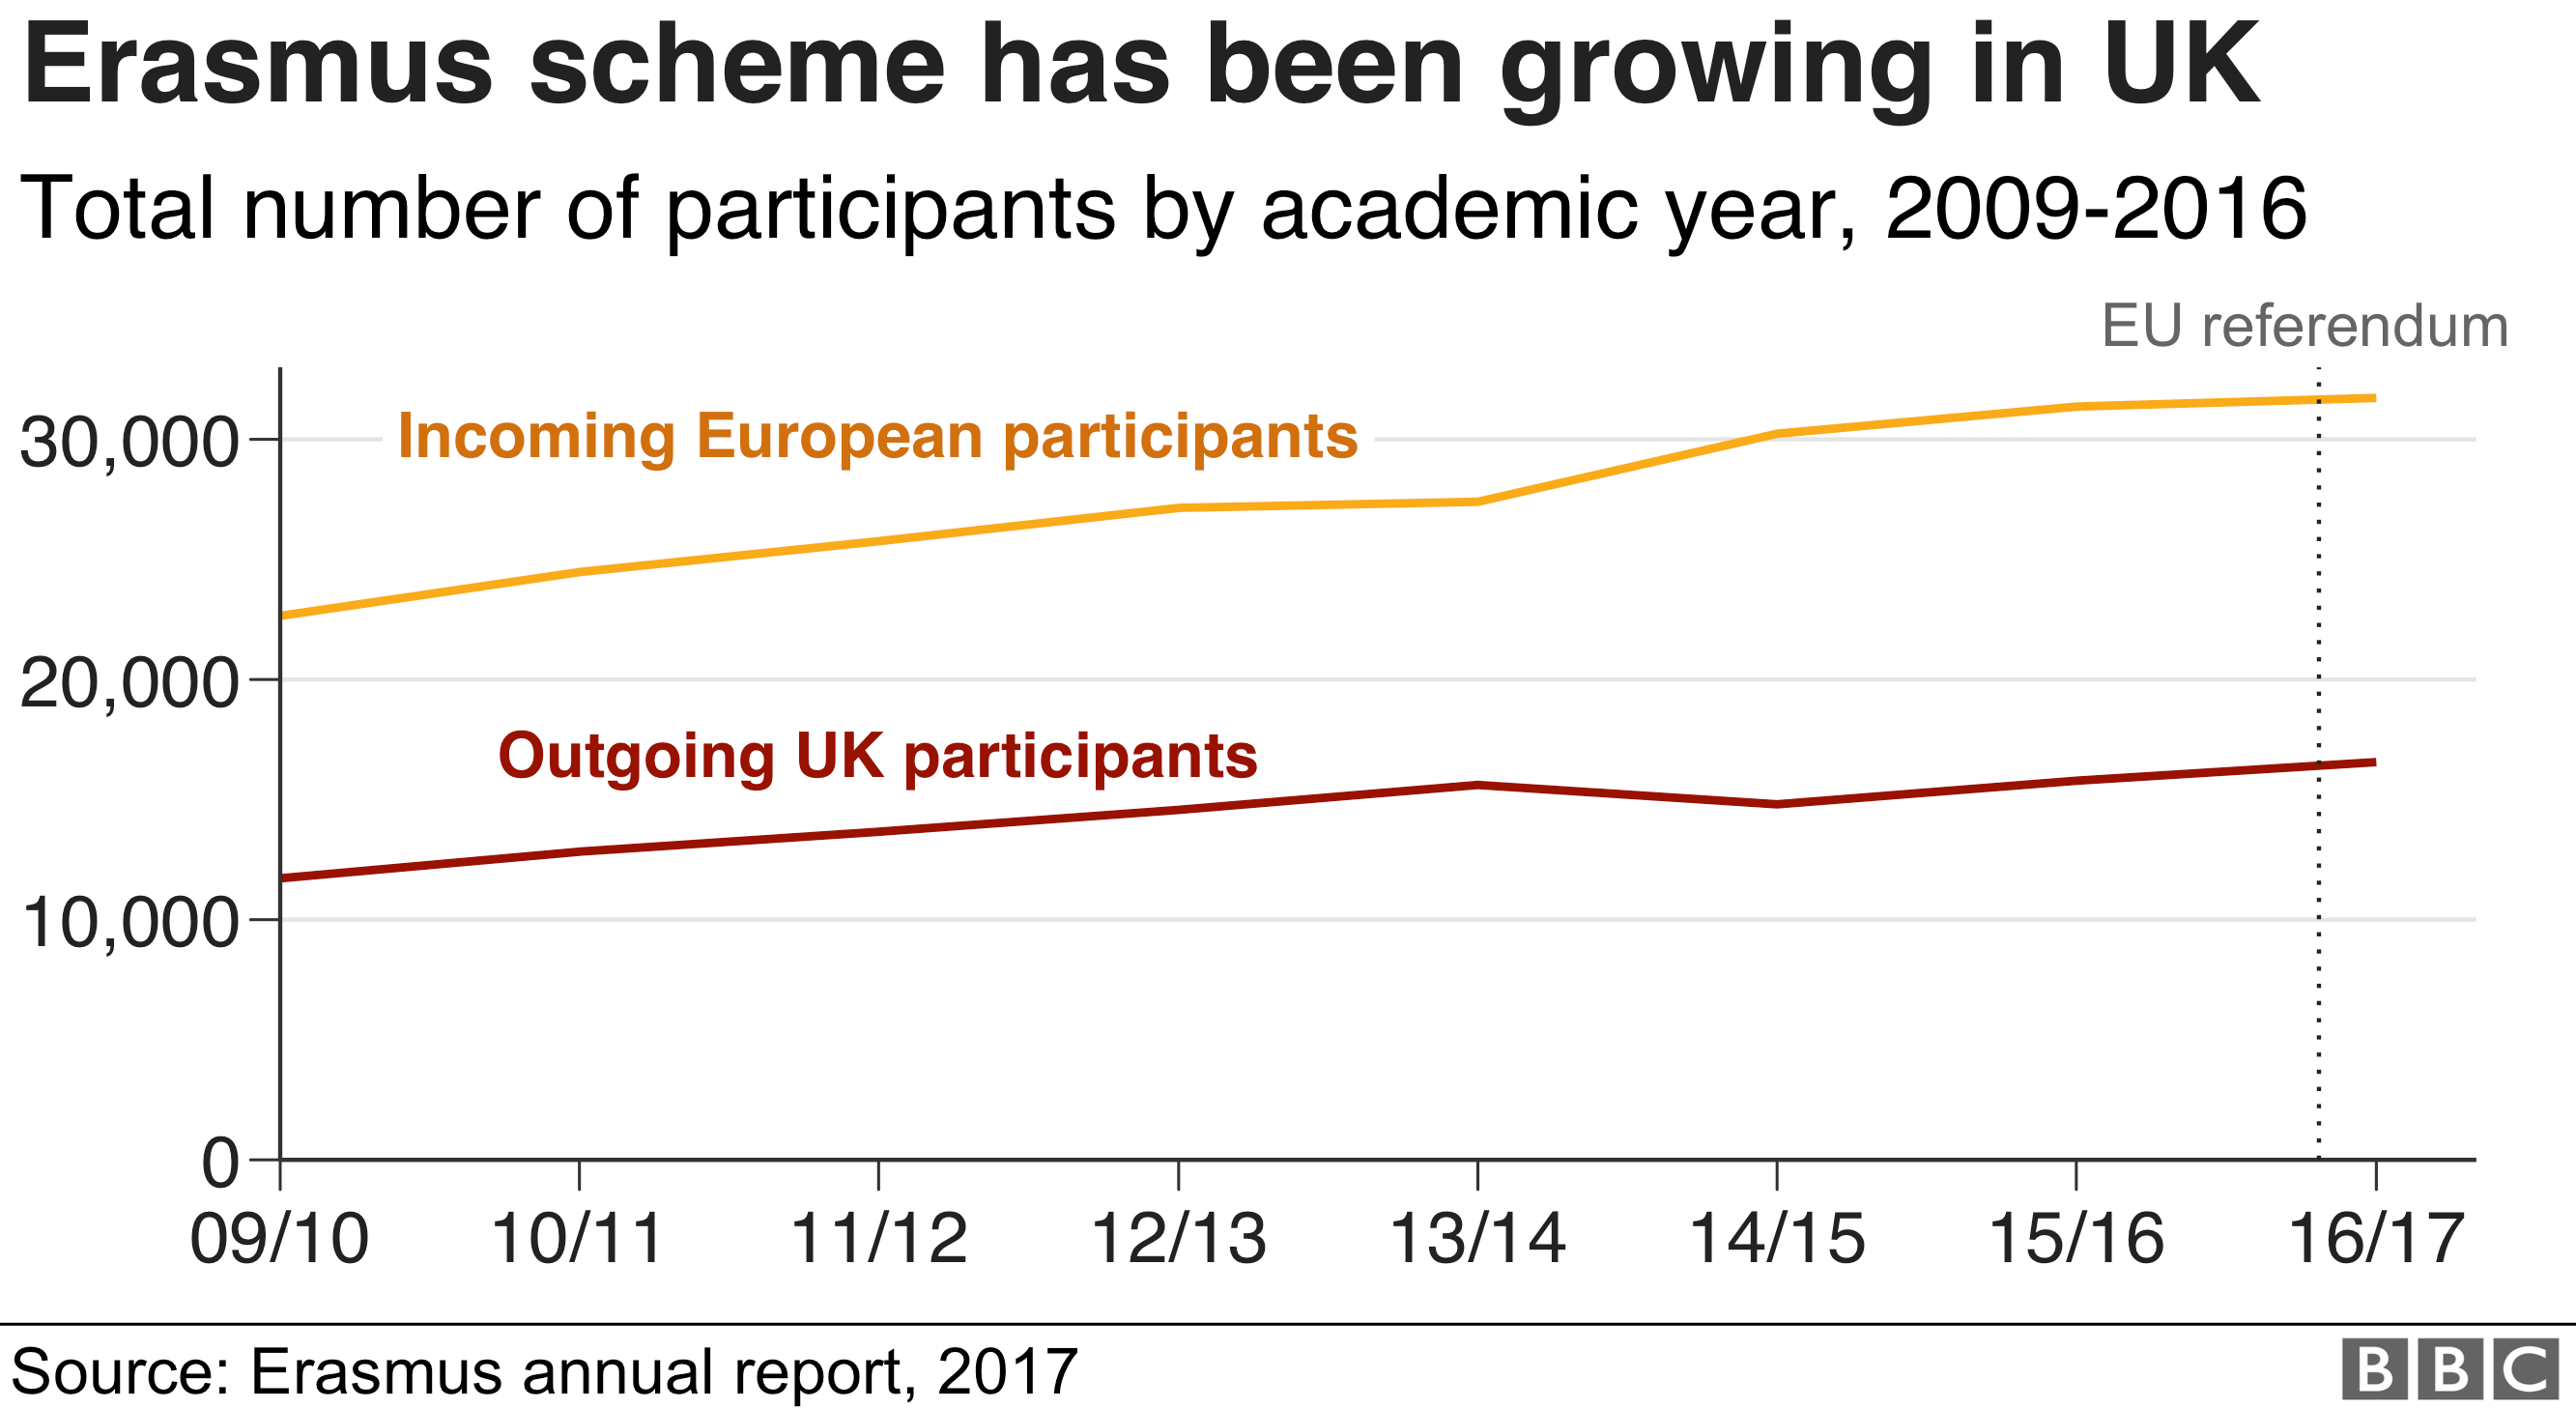 Chart showing how the Erasmus scheme has been growing in the UK